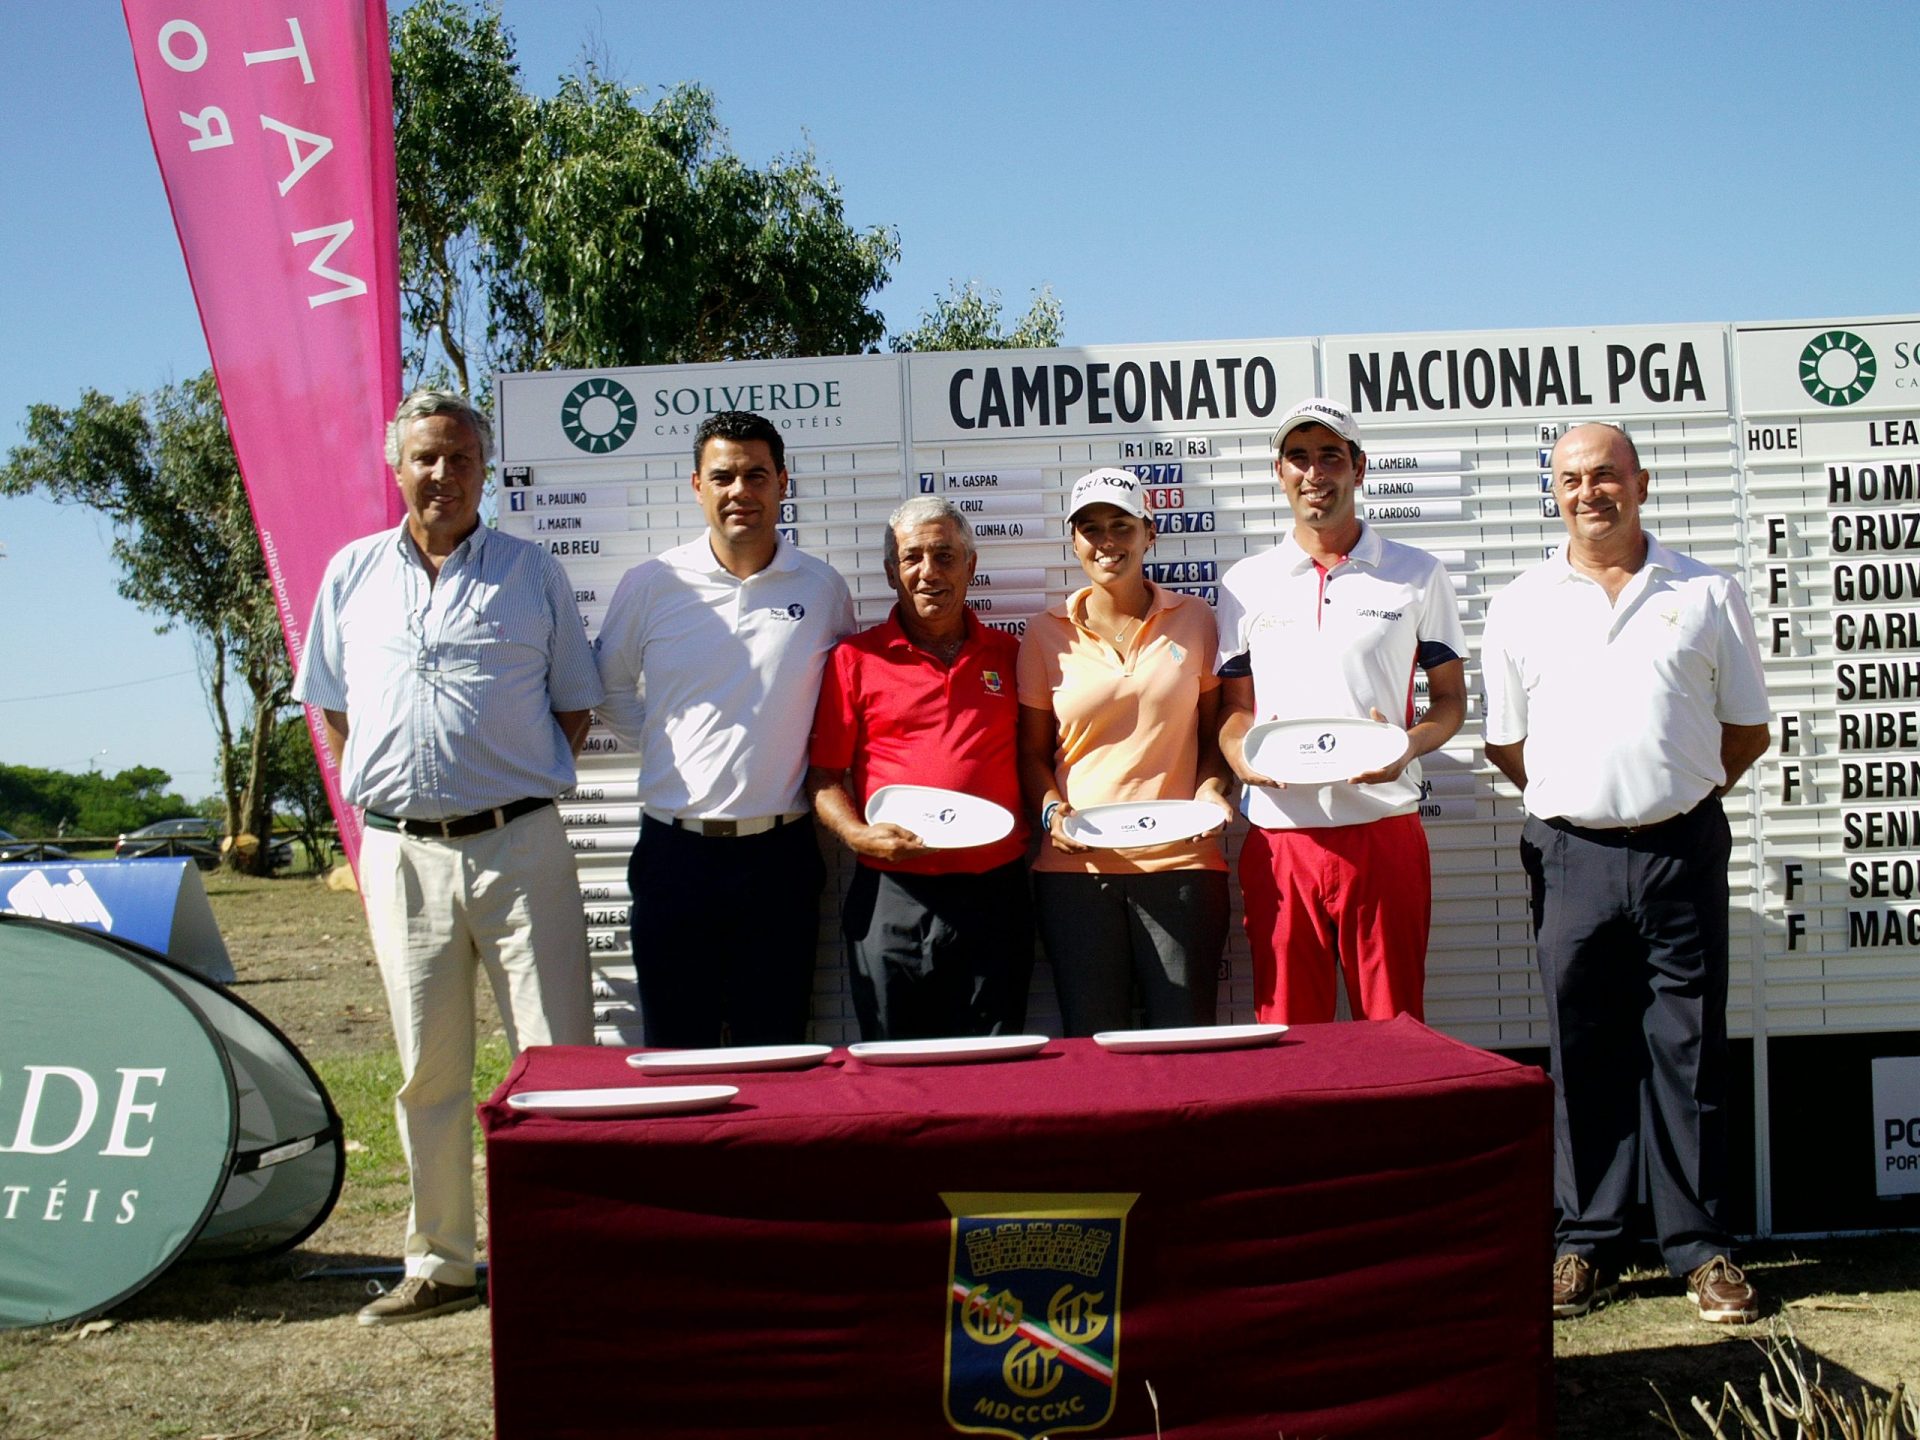 Solverde Campeonato Nacional PGA – Tiago Cruz bicampeão | Outros títulos para Ribeiro e Sequeira